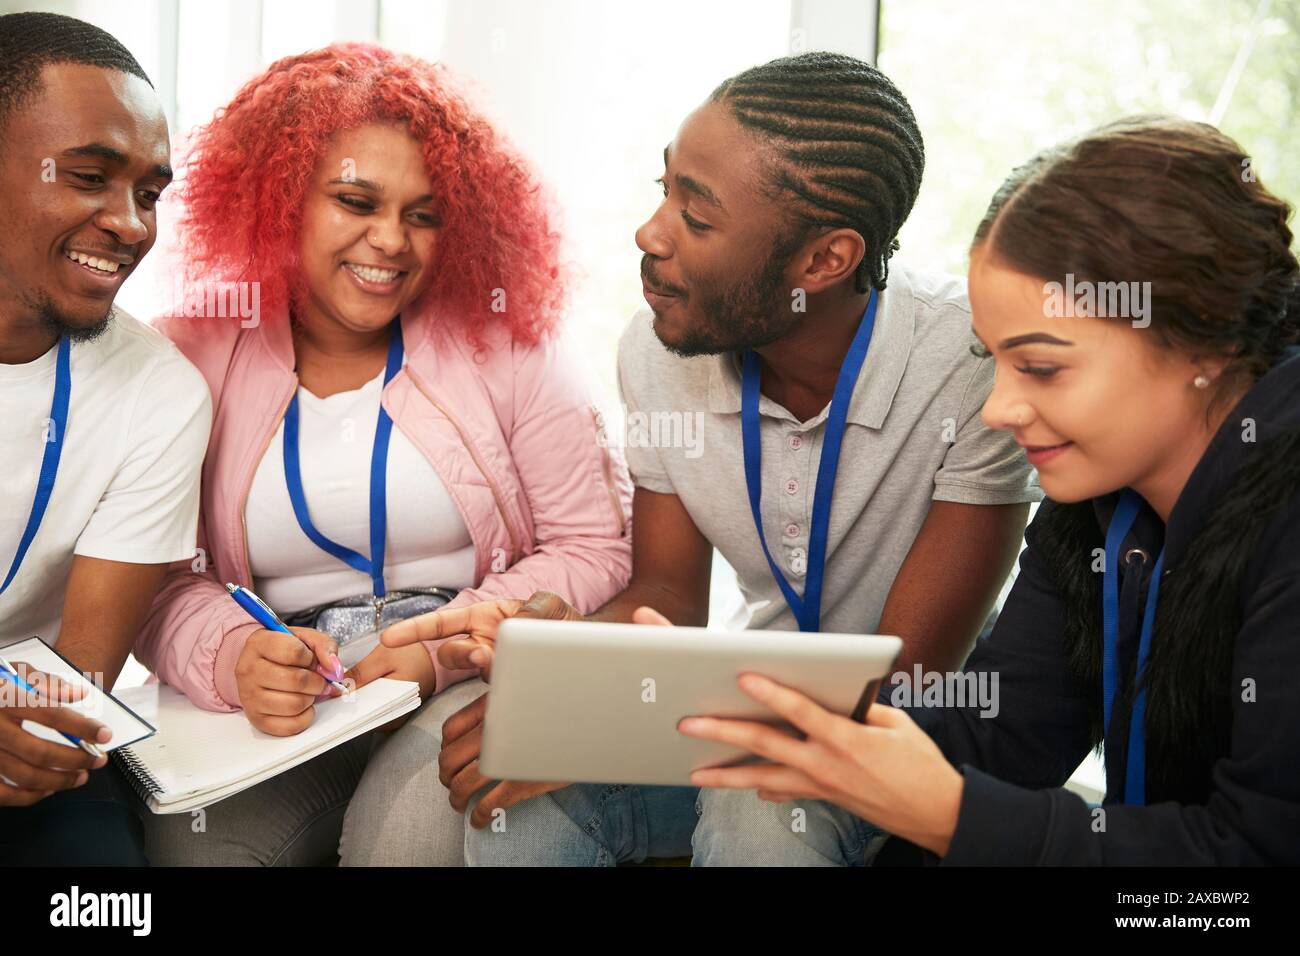 Felices estudiantes de secundaria con tableta digital estudiando Foto de stock